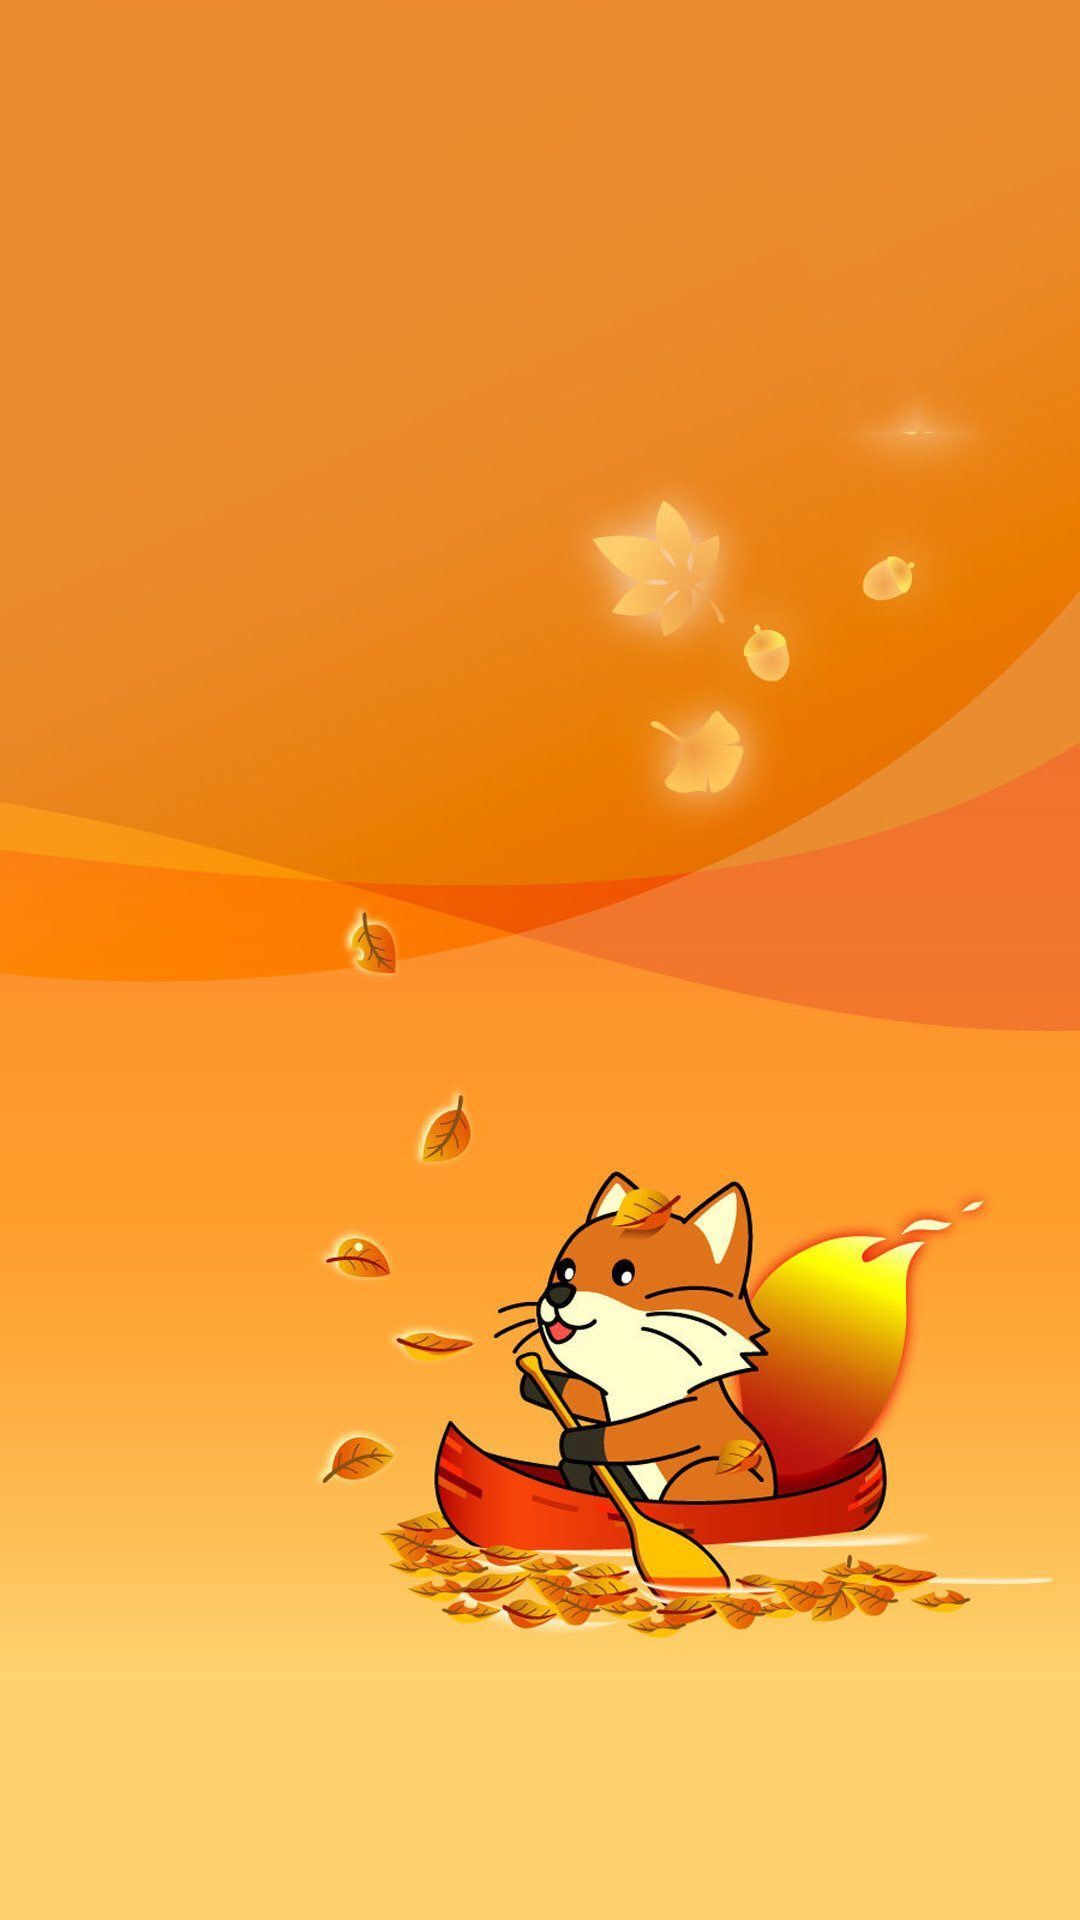 Fox so cute. Fall wallpaper, iPhone wallpaper fall, Cute fall wallpaper